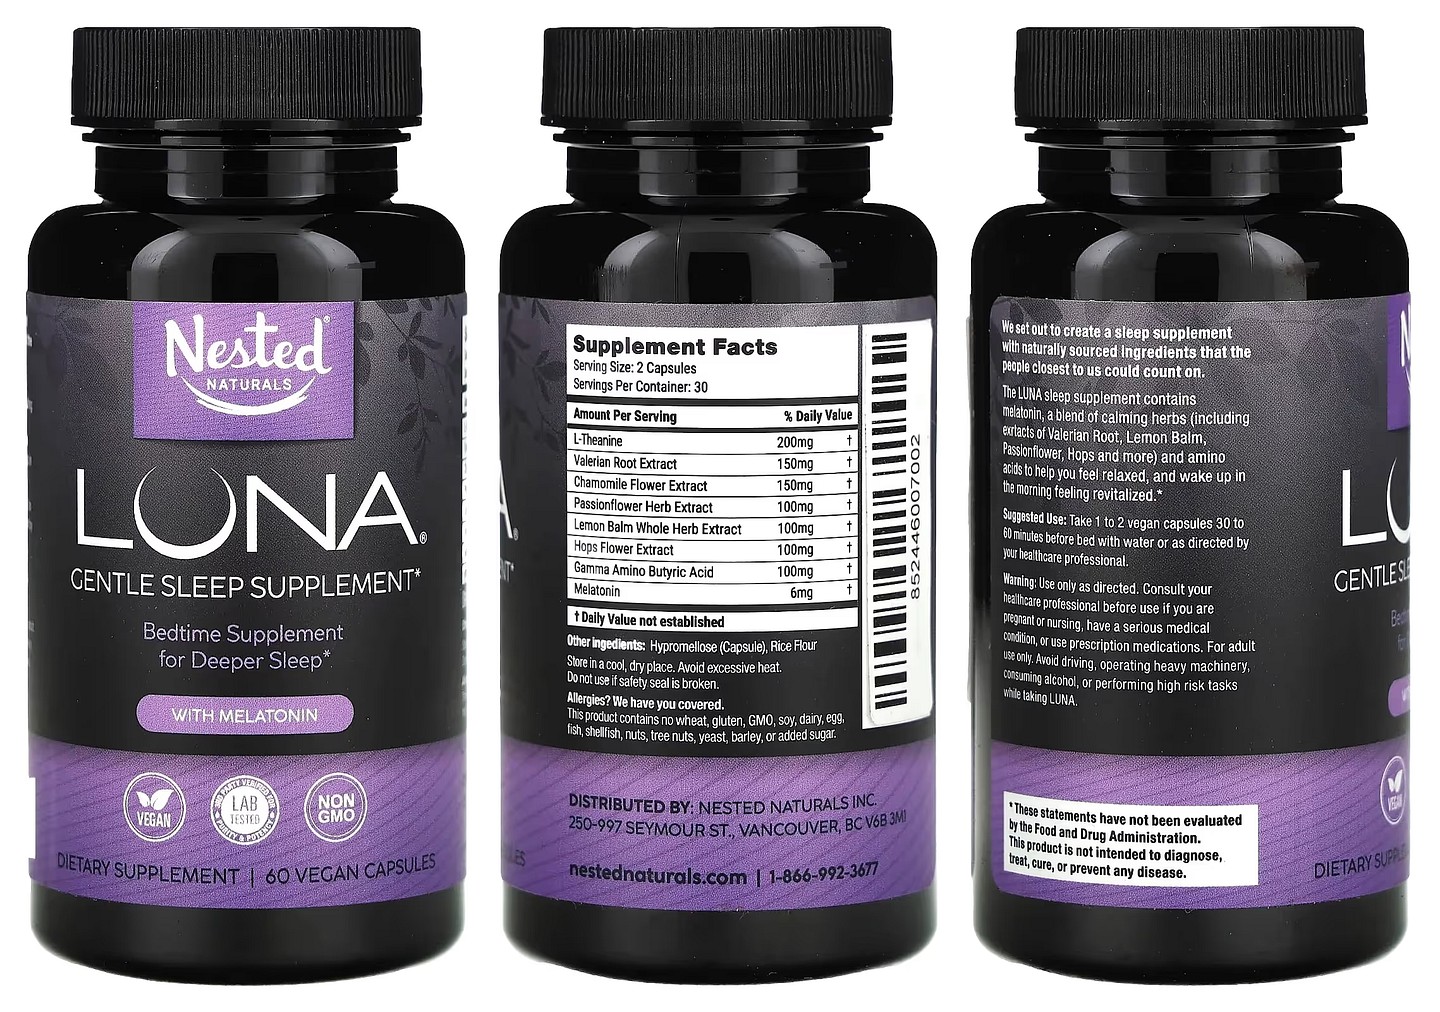 Nested Naturals, Luna, Gentle Sleep Supplement with Melatonin packaging